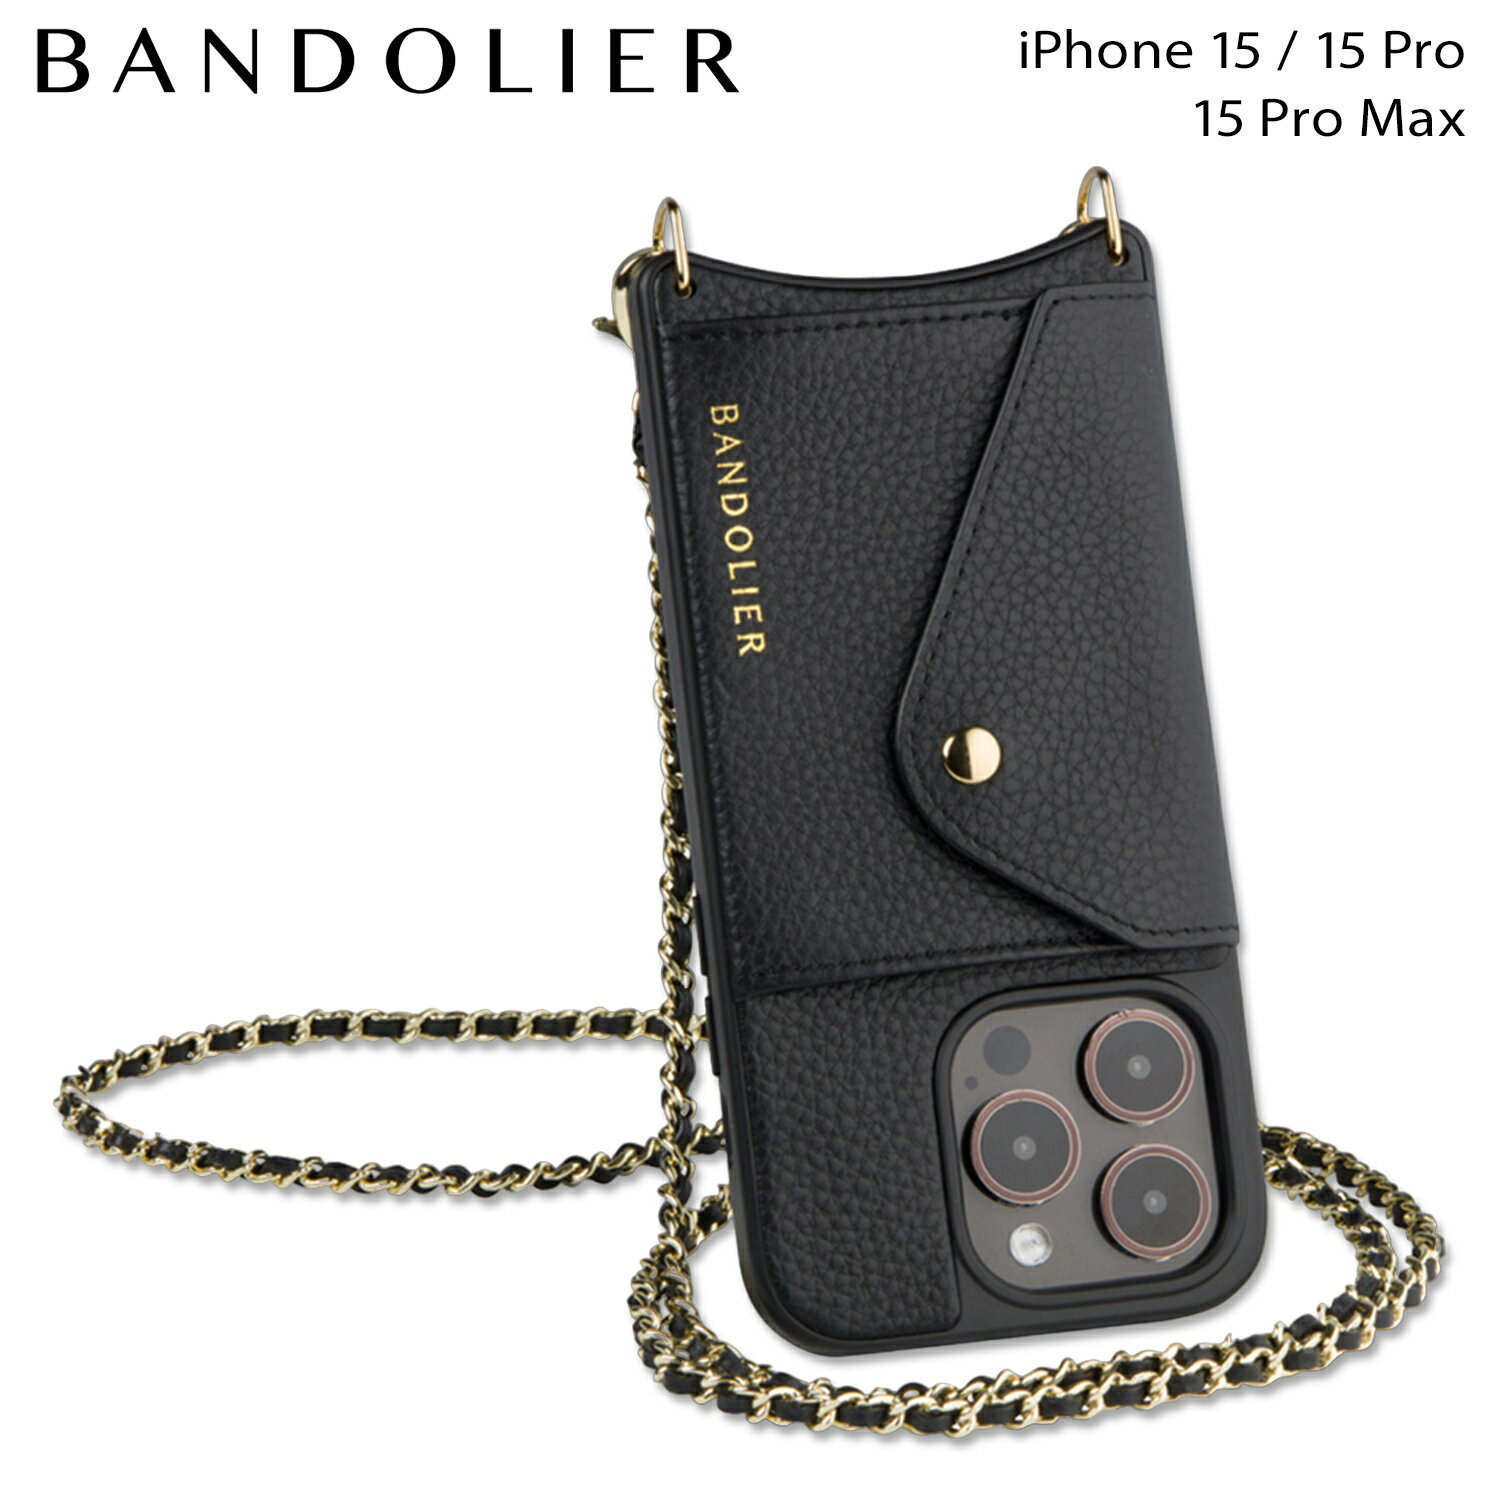  バンドリヤー BANDOLIER iPhone15 15Pro iPhone 15 Pro Max スマホケース スマホショルダー 携帯 アイフォン リリー ゴールド バンドレット セット メンズ レディース LILY GOLD BANDOLET SET ブラック 黒 14LIL